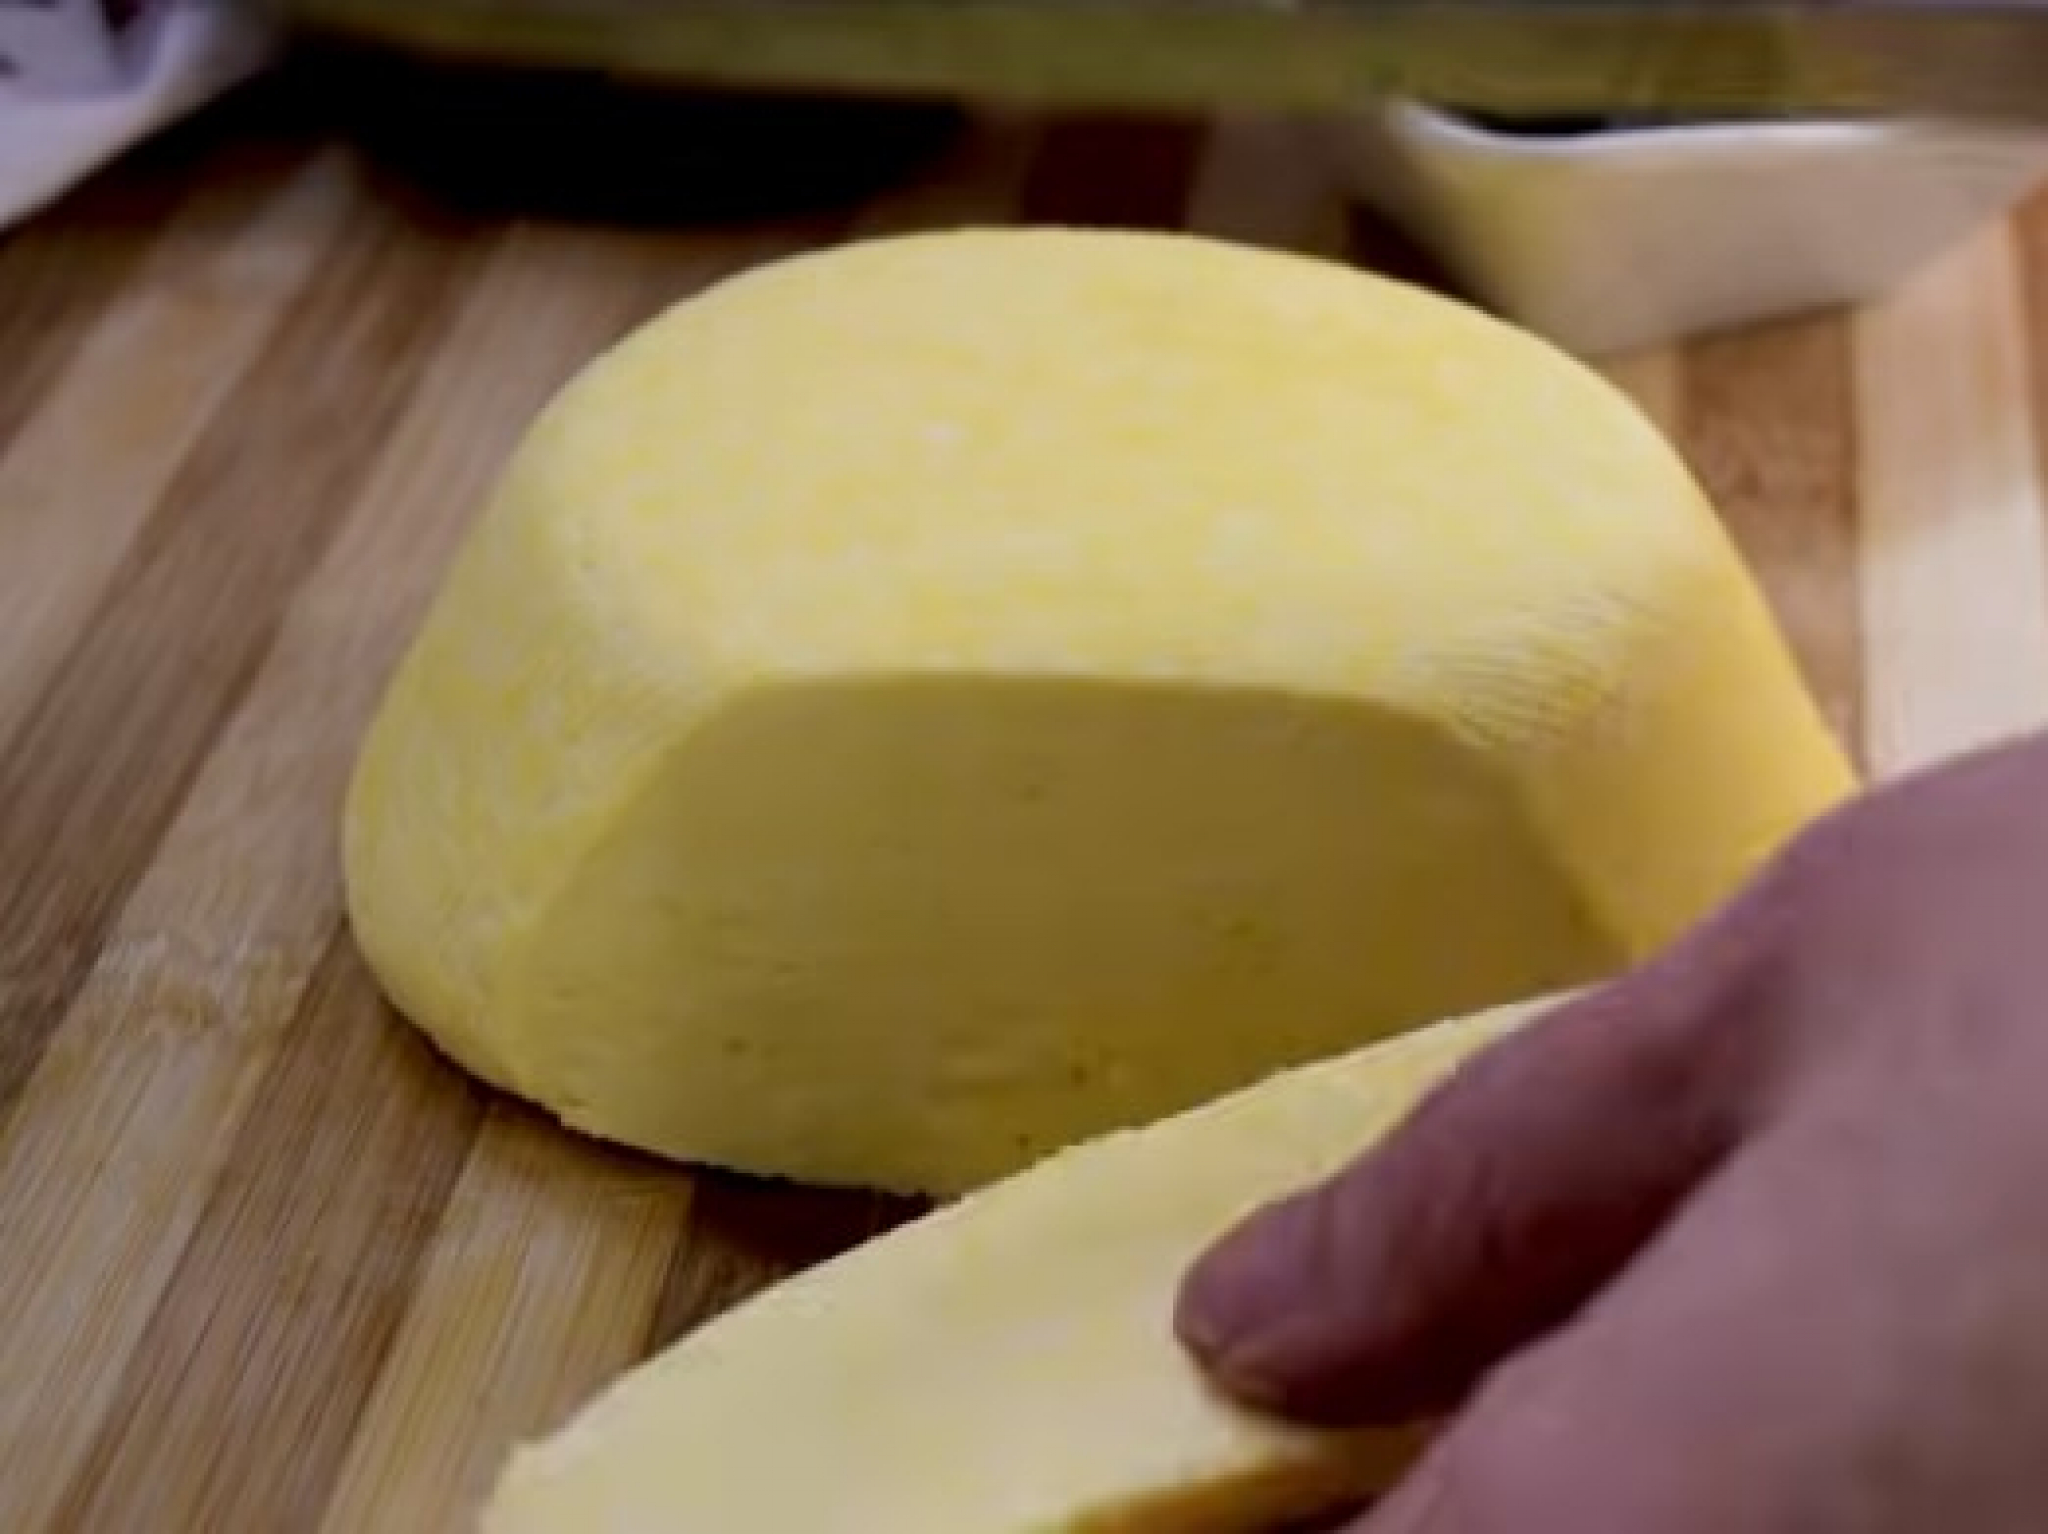 JEFTINIJI I UKUSNIJI OD KUPOVNOG  Sipajte jaja u ključalo mleko i napravite domaći sir, bez aditiva